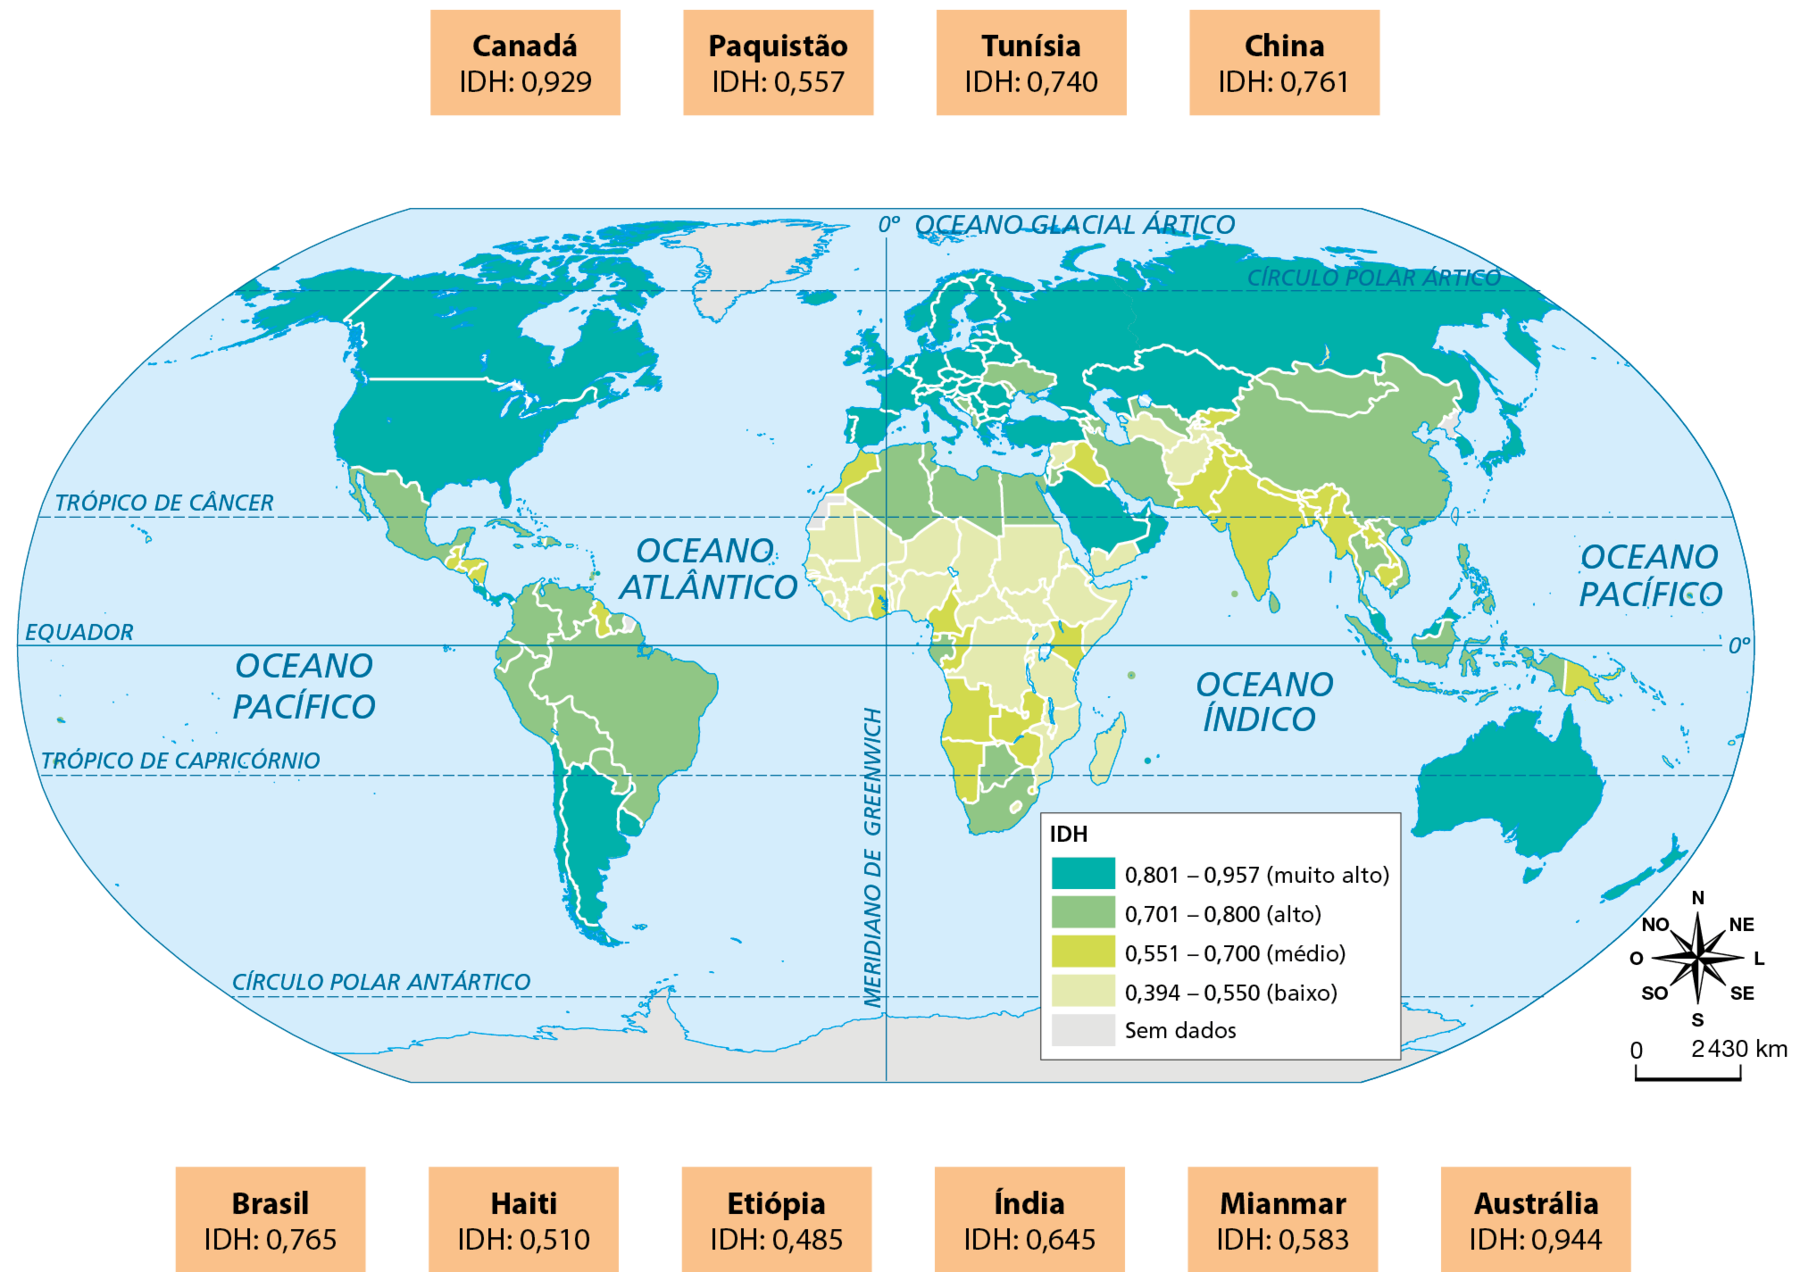 Mapa. Título: Índice de Desenvolvimento Humano (IDH) – 2019. O mapa mostra os continentes e a legenda indica as informações: IDH. 0,801 – 0,957 (muito alto): predomina na América do Norte, sul da América do Sul, norte da Ásia, Europa, Oceania. De 0,701 – 0,800 (alto): predomina na América do Norte, América do Sul, norte da África, sul da Ásia. De 0,551 – 0,700 (médio): predomina no sul da África, sudeste da Ásia. De 0,394 – 0,550 (baixo): predomina em grande parte da África e sudeste da Ásia. Sem dados: Groenlândia. Ao redor do mapa, as informações: Canadá. IDH: 0,929. Paquistão. IDH: 0,557. Tunísia. IDH: 0,740. China. IDH: 0,761. Brasil. IDH: 0,765. Haiti. IDH: 0,510. Etiópia. IDH: 0,485. Índia. IDH: 0,645. Mianmar. IDH: 0,583. Austrália. IDH: 0,944. Rosa dos ventos. Escala 0:2 430.